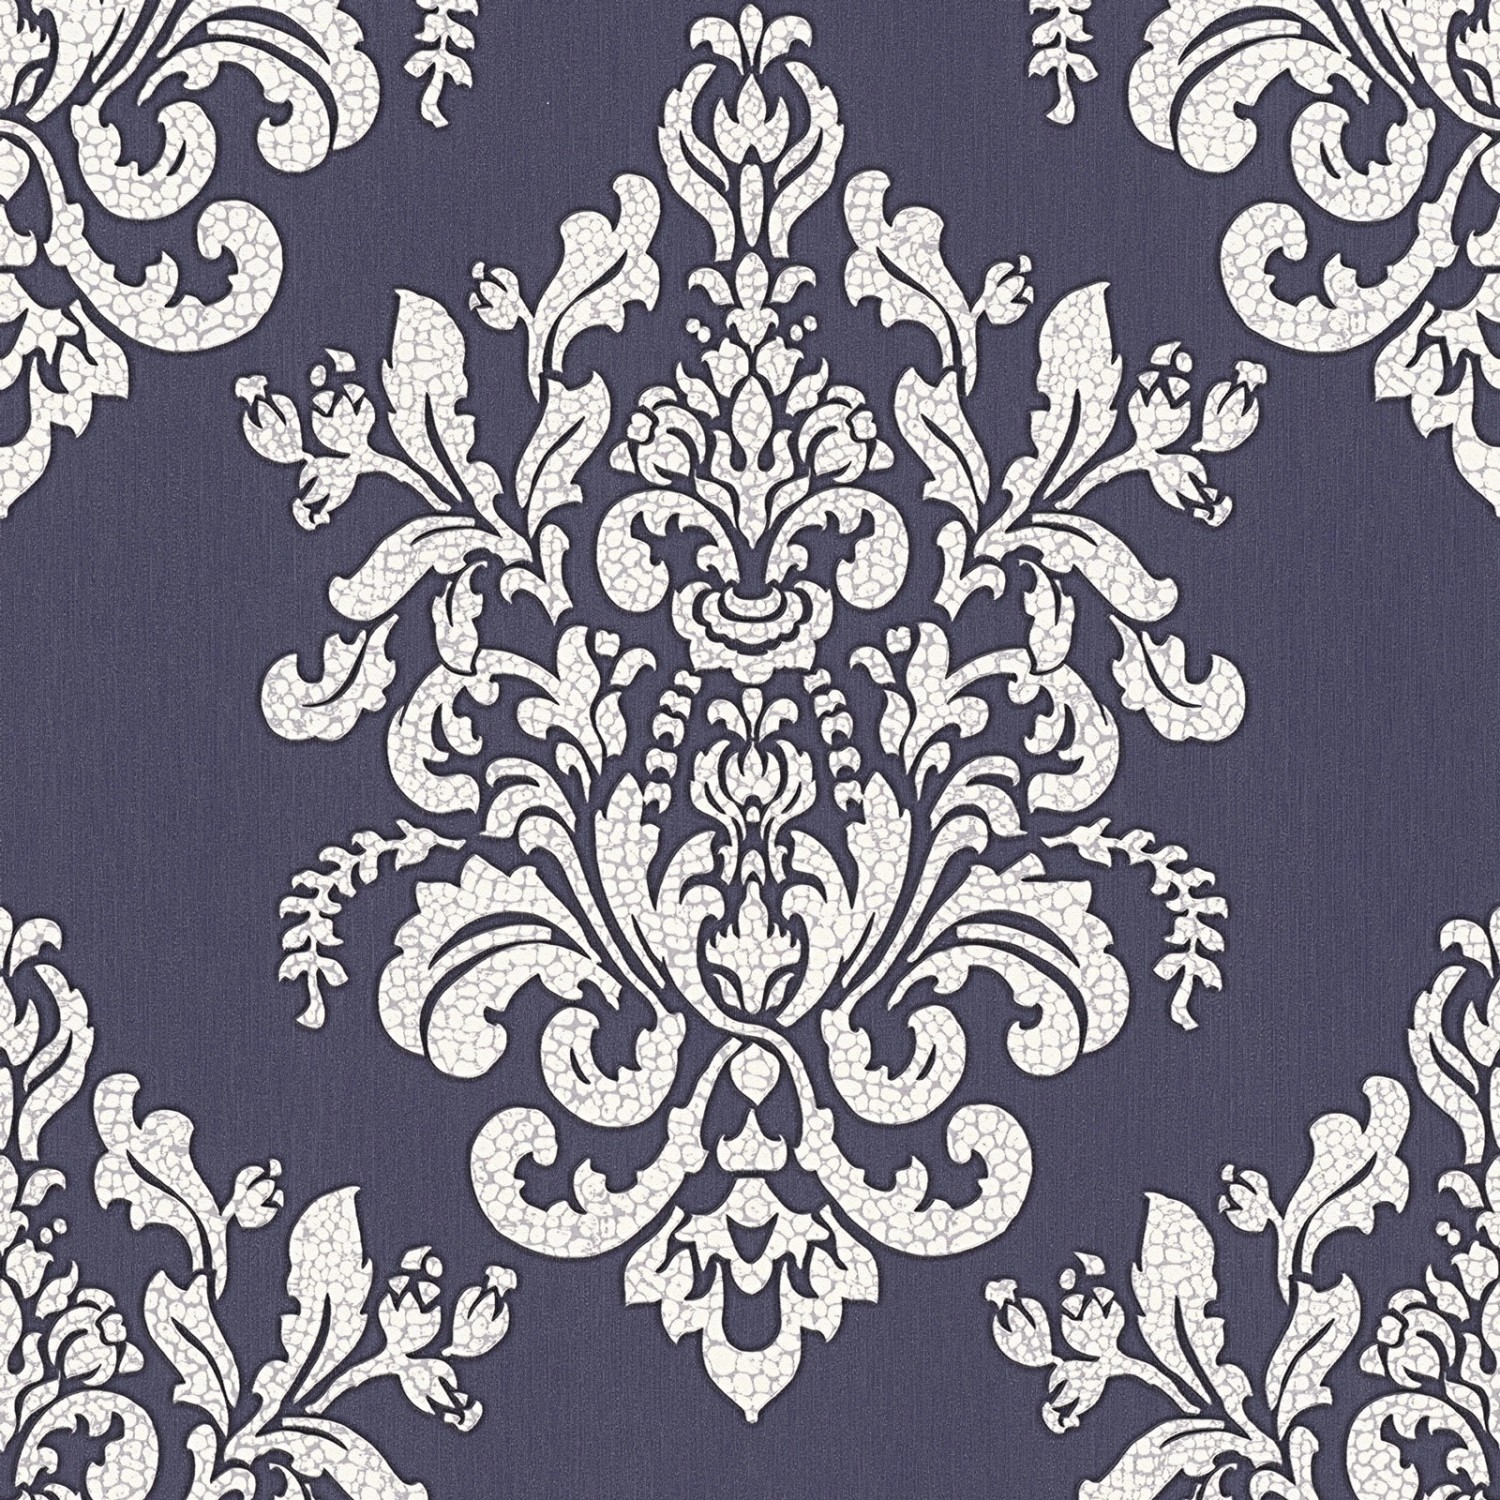 Bricoflor Englische Tapete in Violett Weiß Elegante Vlies Musstertapete im Barock Stil Muster Vliestapete mit Ornament i